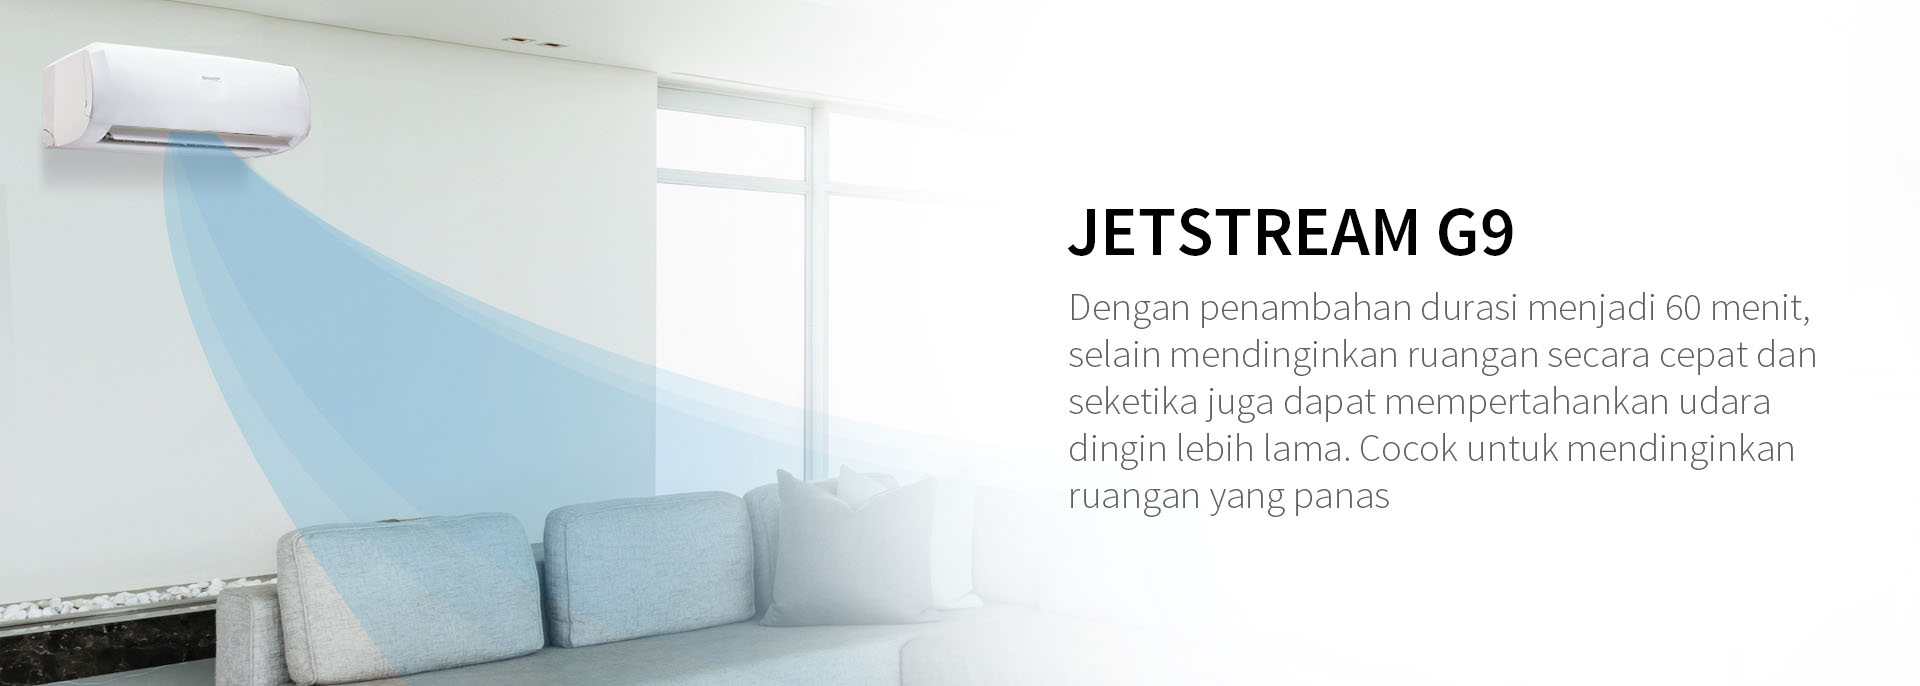 Jetstream%20G9%20-2.jpg